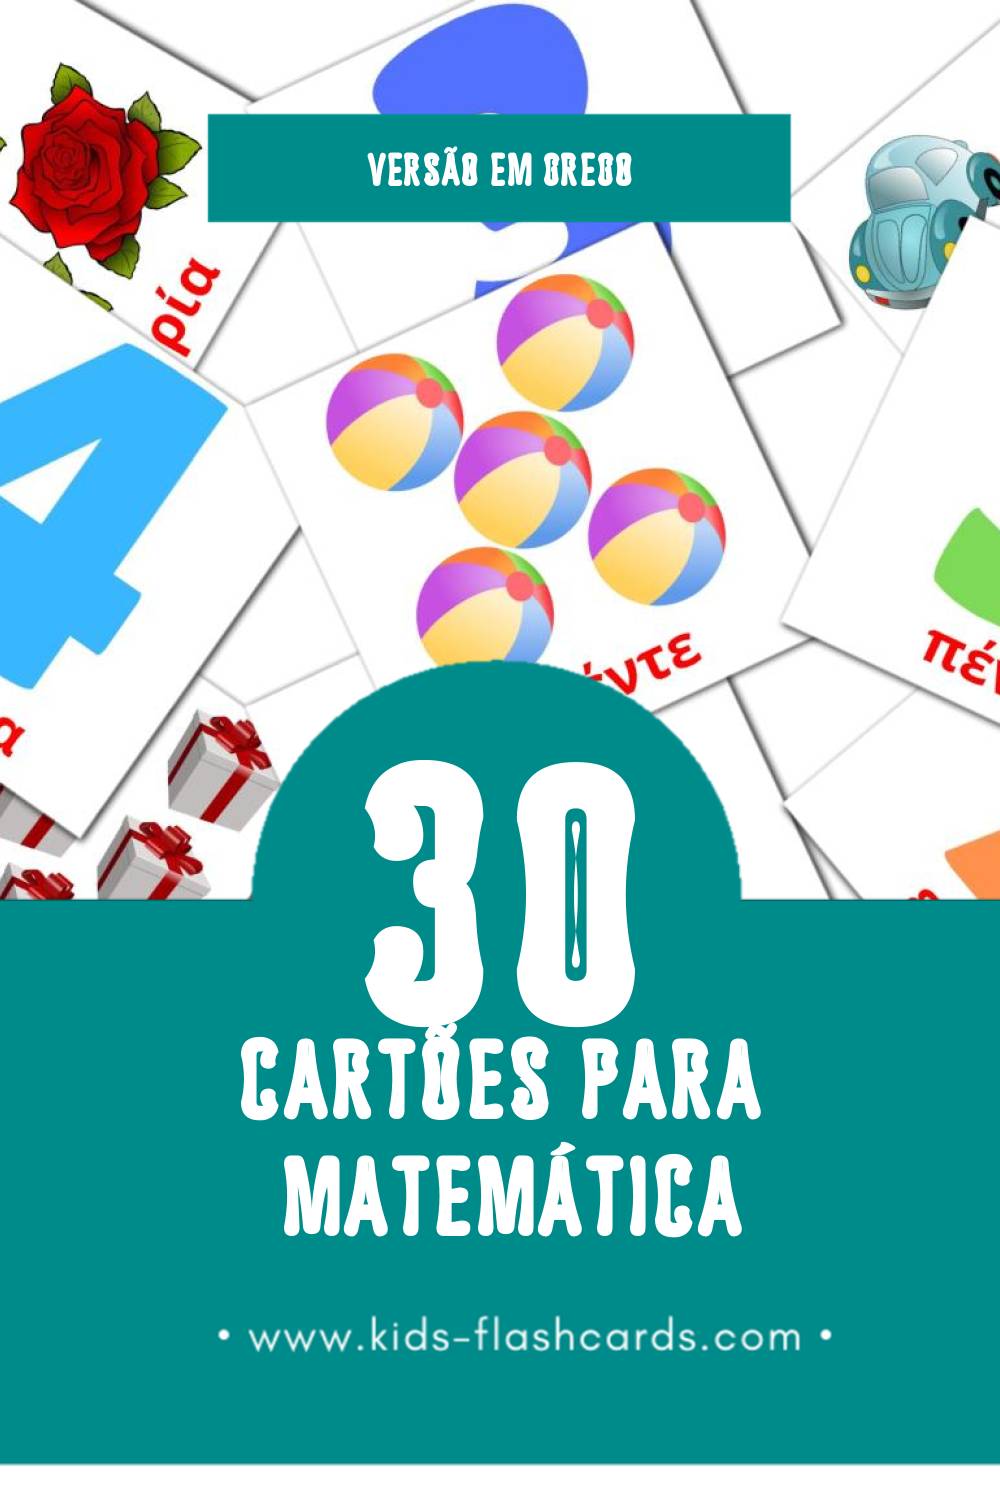 Flashcards de Μαθηματικά Visuais para Toddlers (30 cartões em Grego)